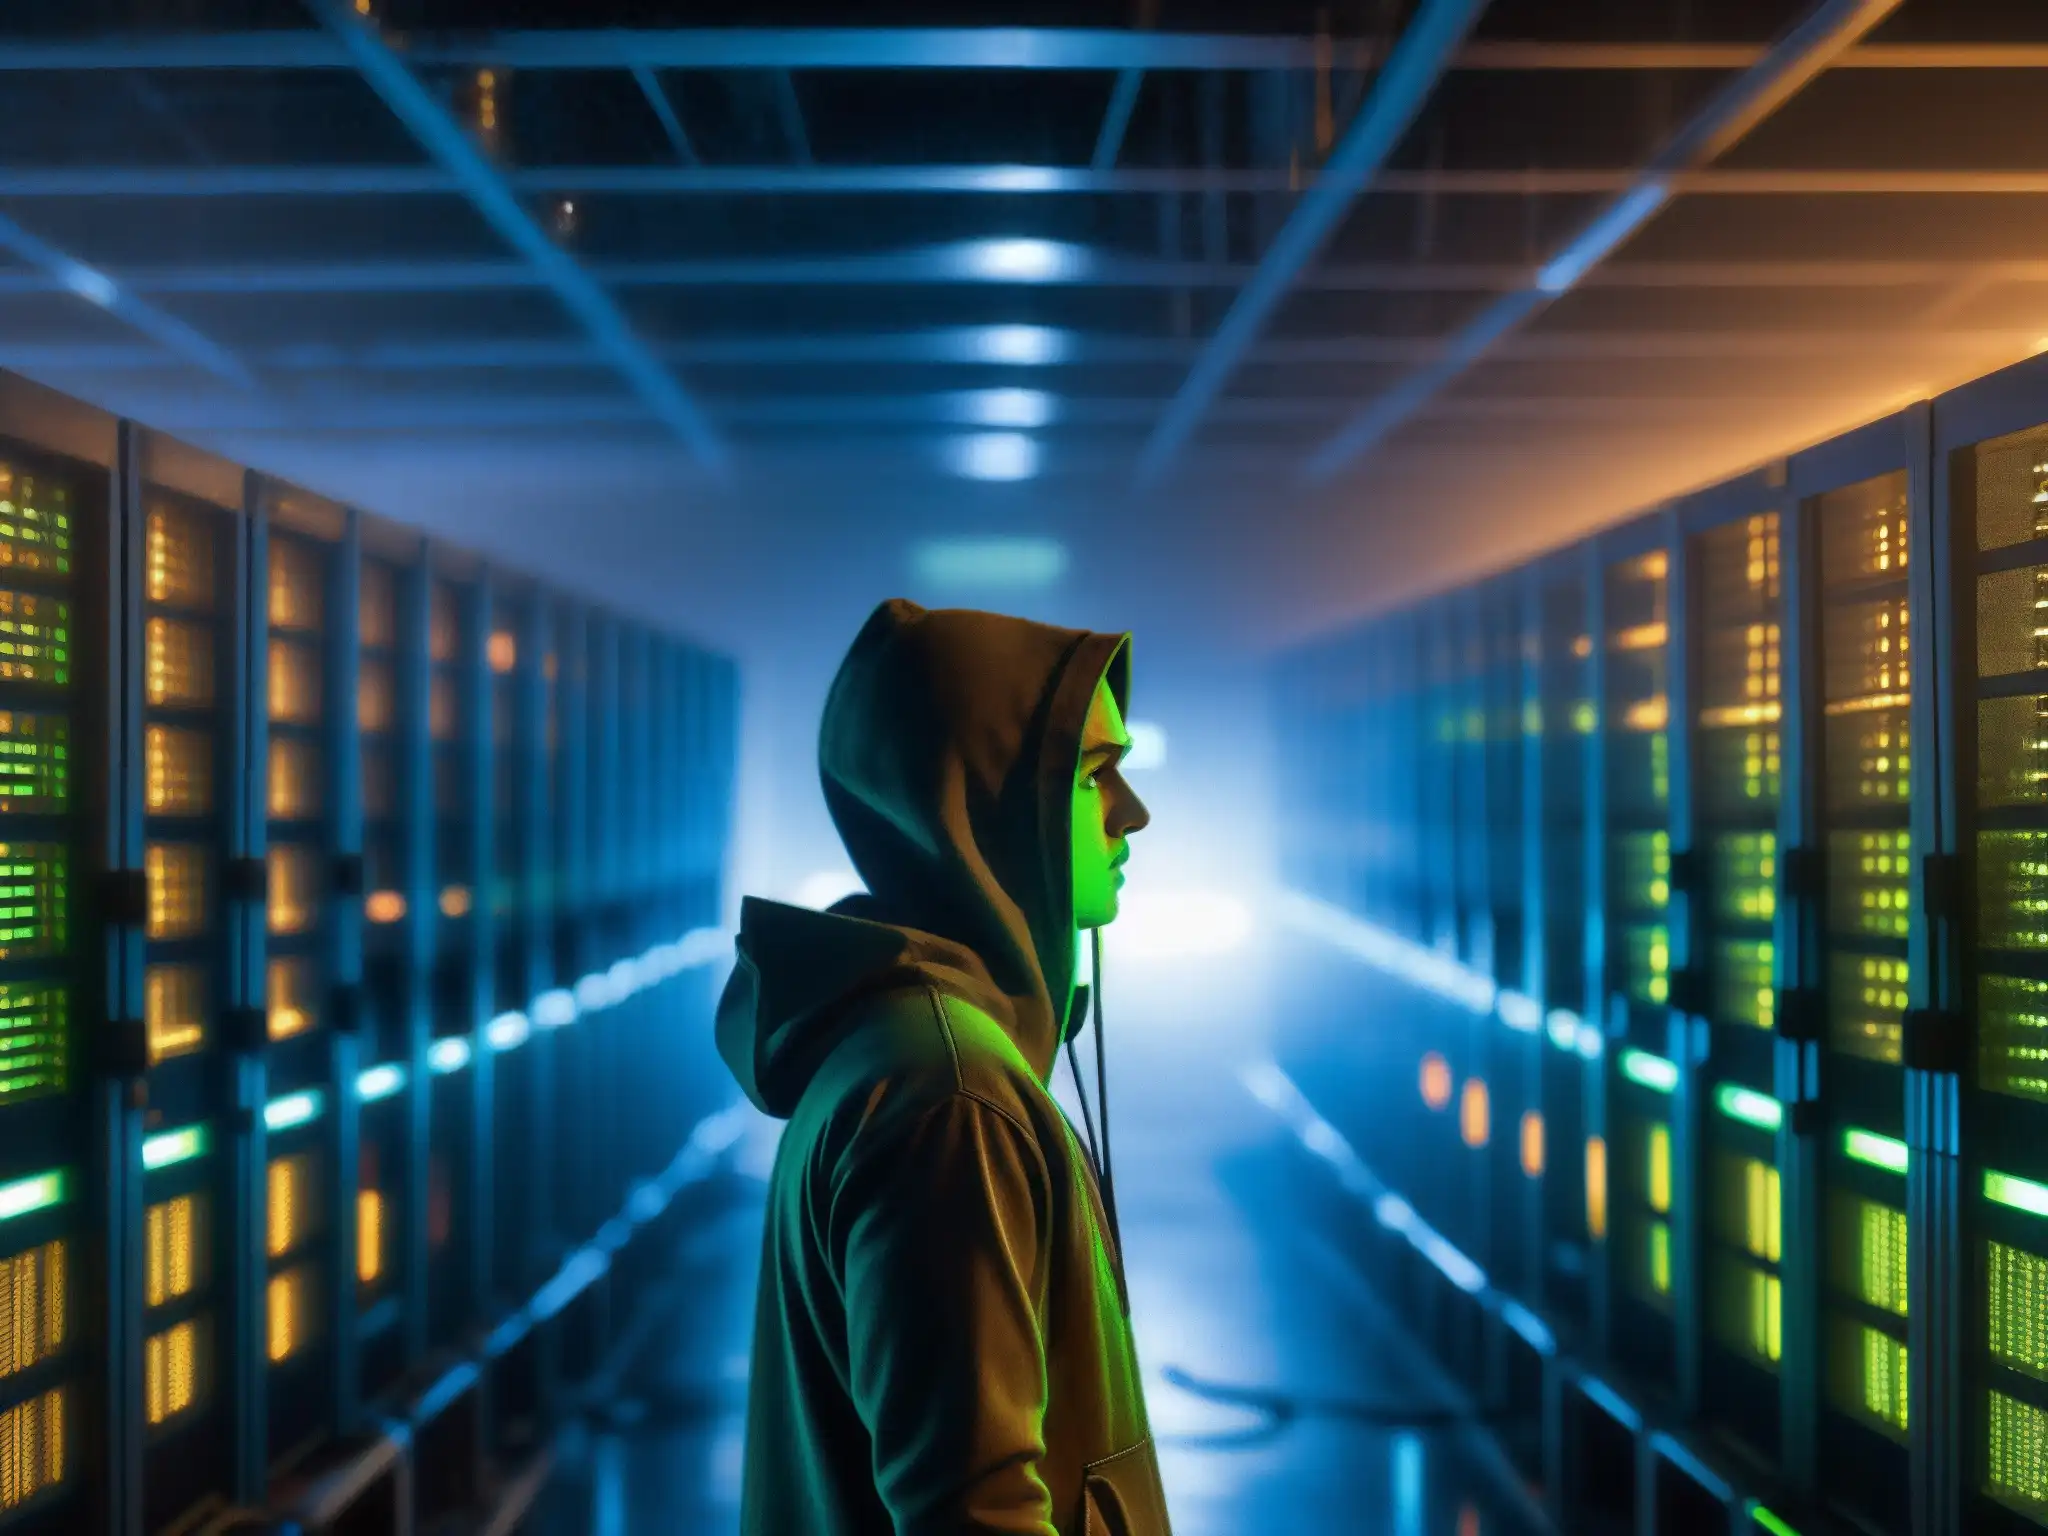 Una sala de servidores abandonada y tenebrosa, con luces parpadeantes y cables enredados, evocando leyendas urbanas de hackers y fantasmas en la red